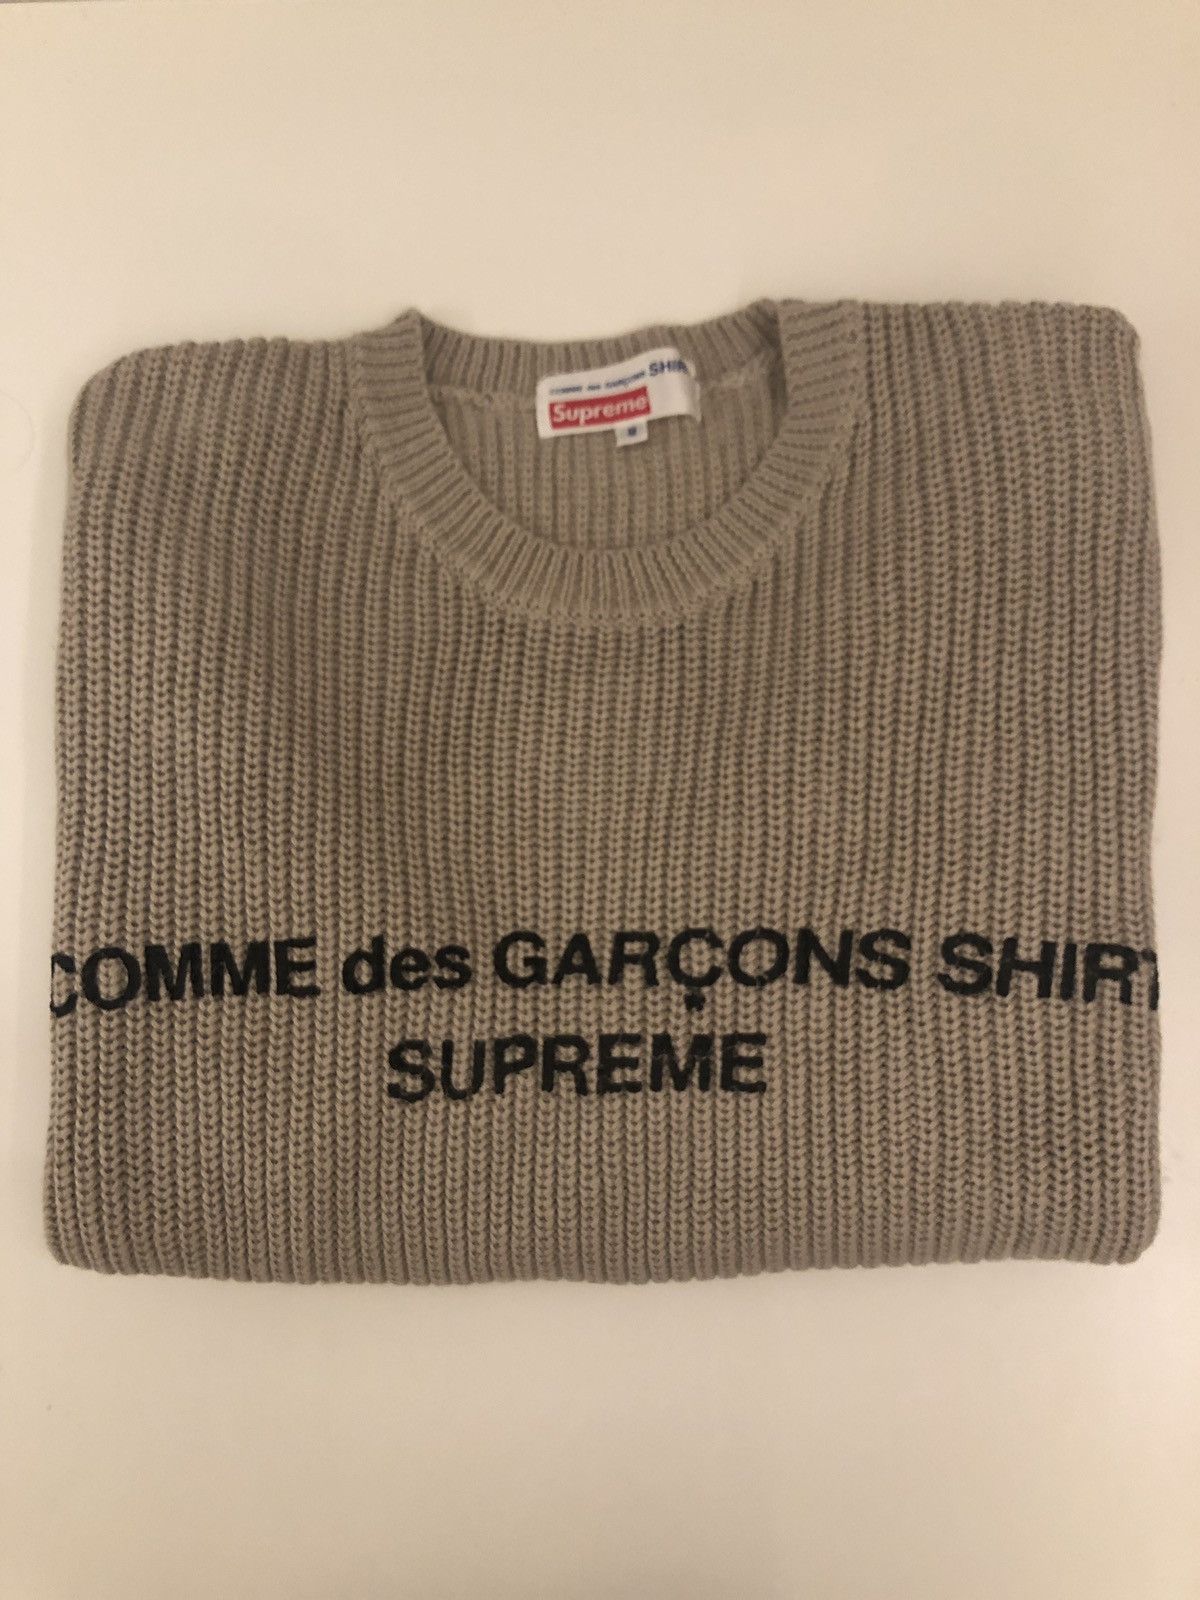 Supreme Supreme Cdg Sweater | Grailed